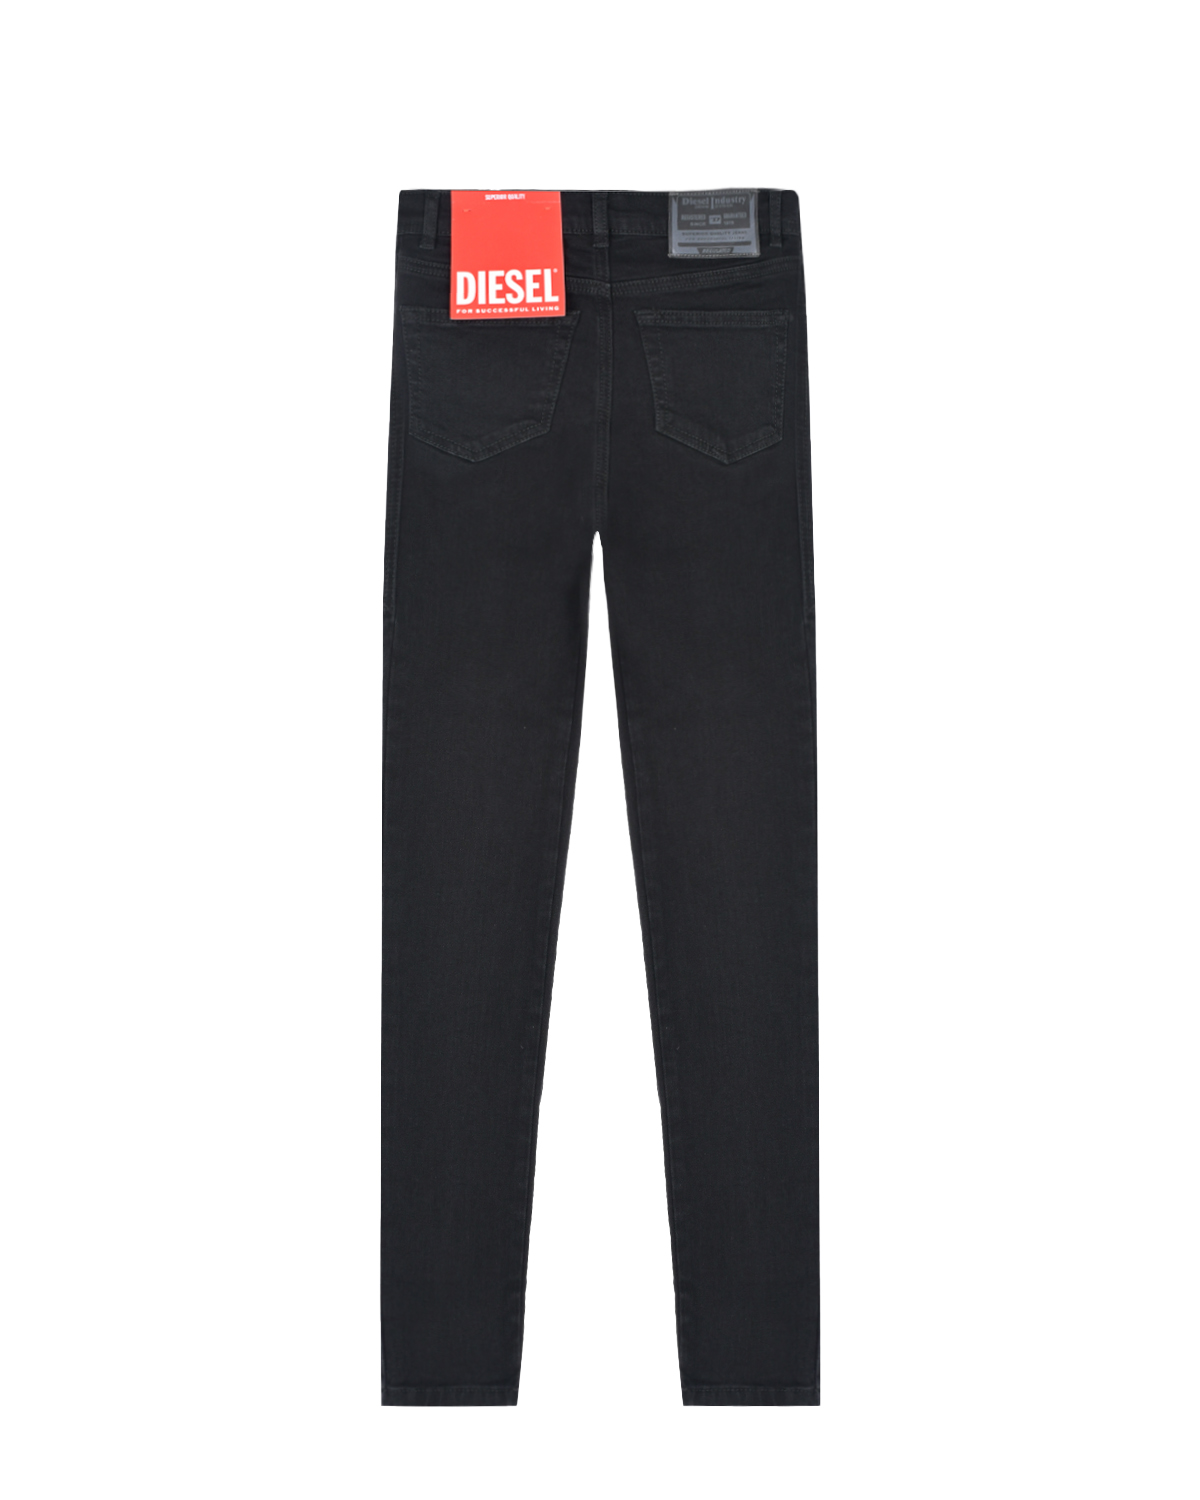 Зауженные черные джинсы Diesel детские, размер 104, цвет черный - фото 2